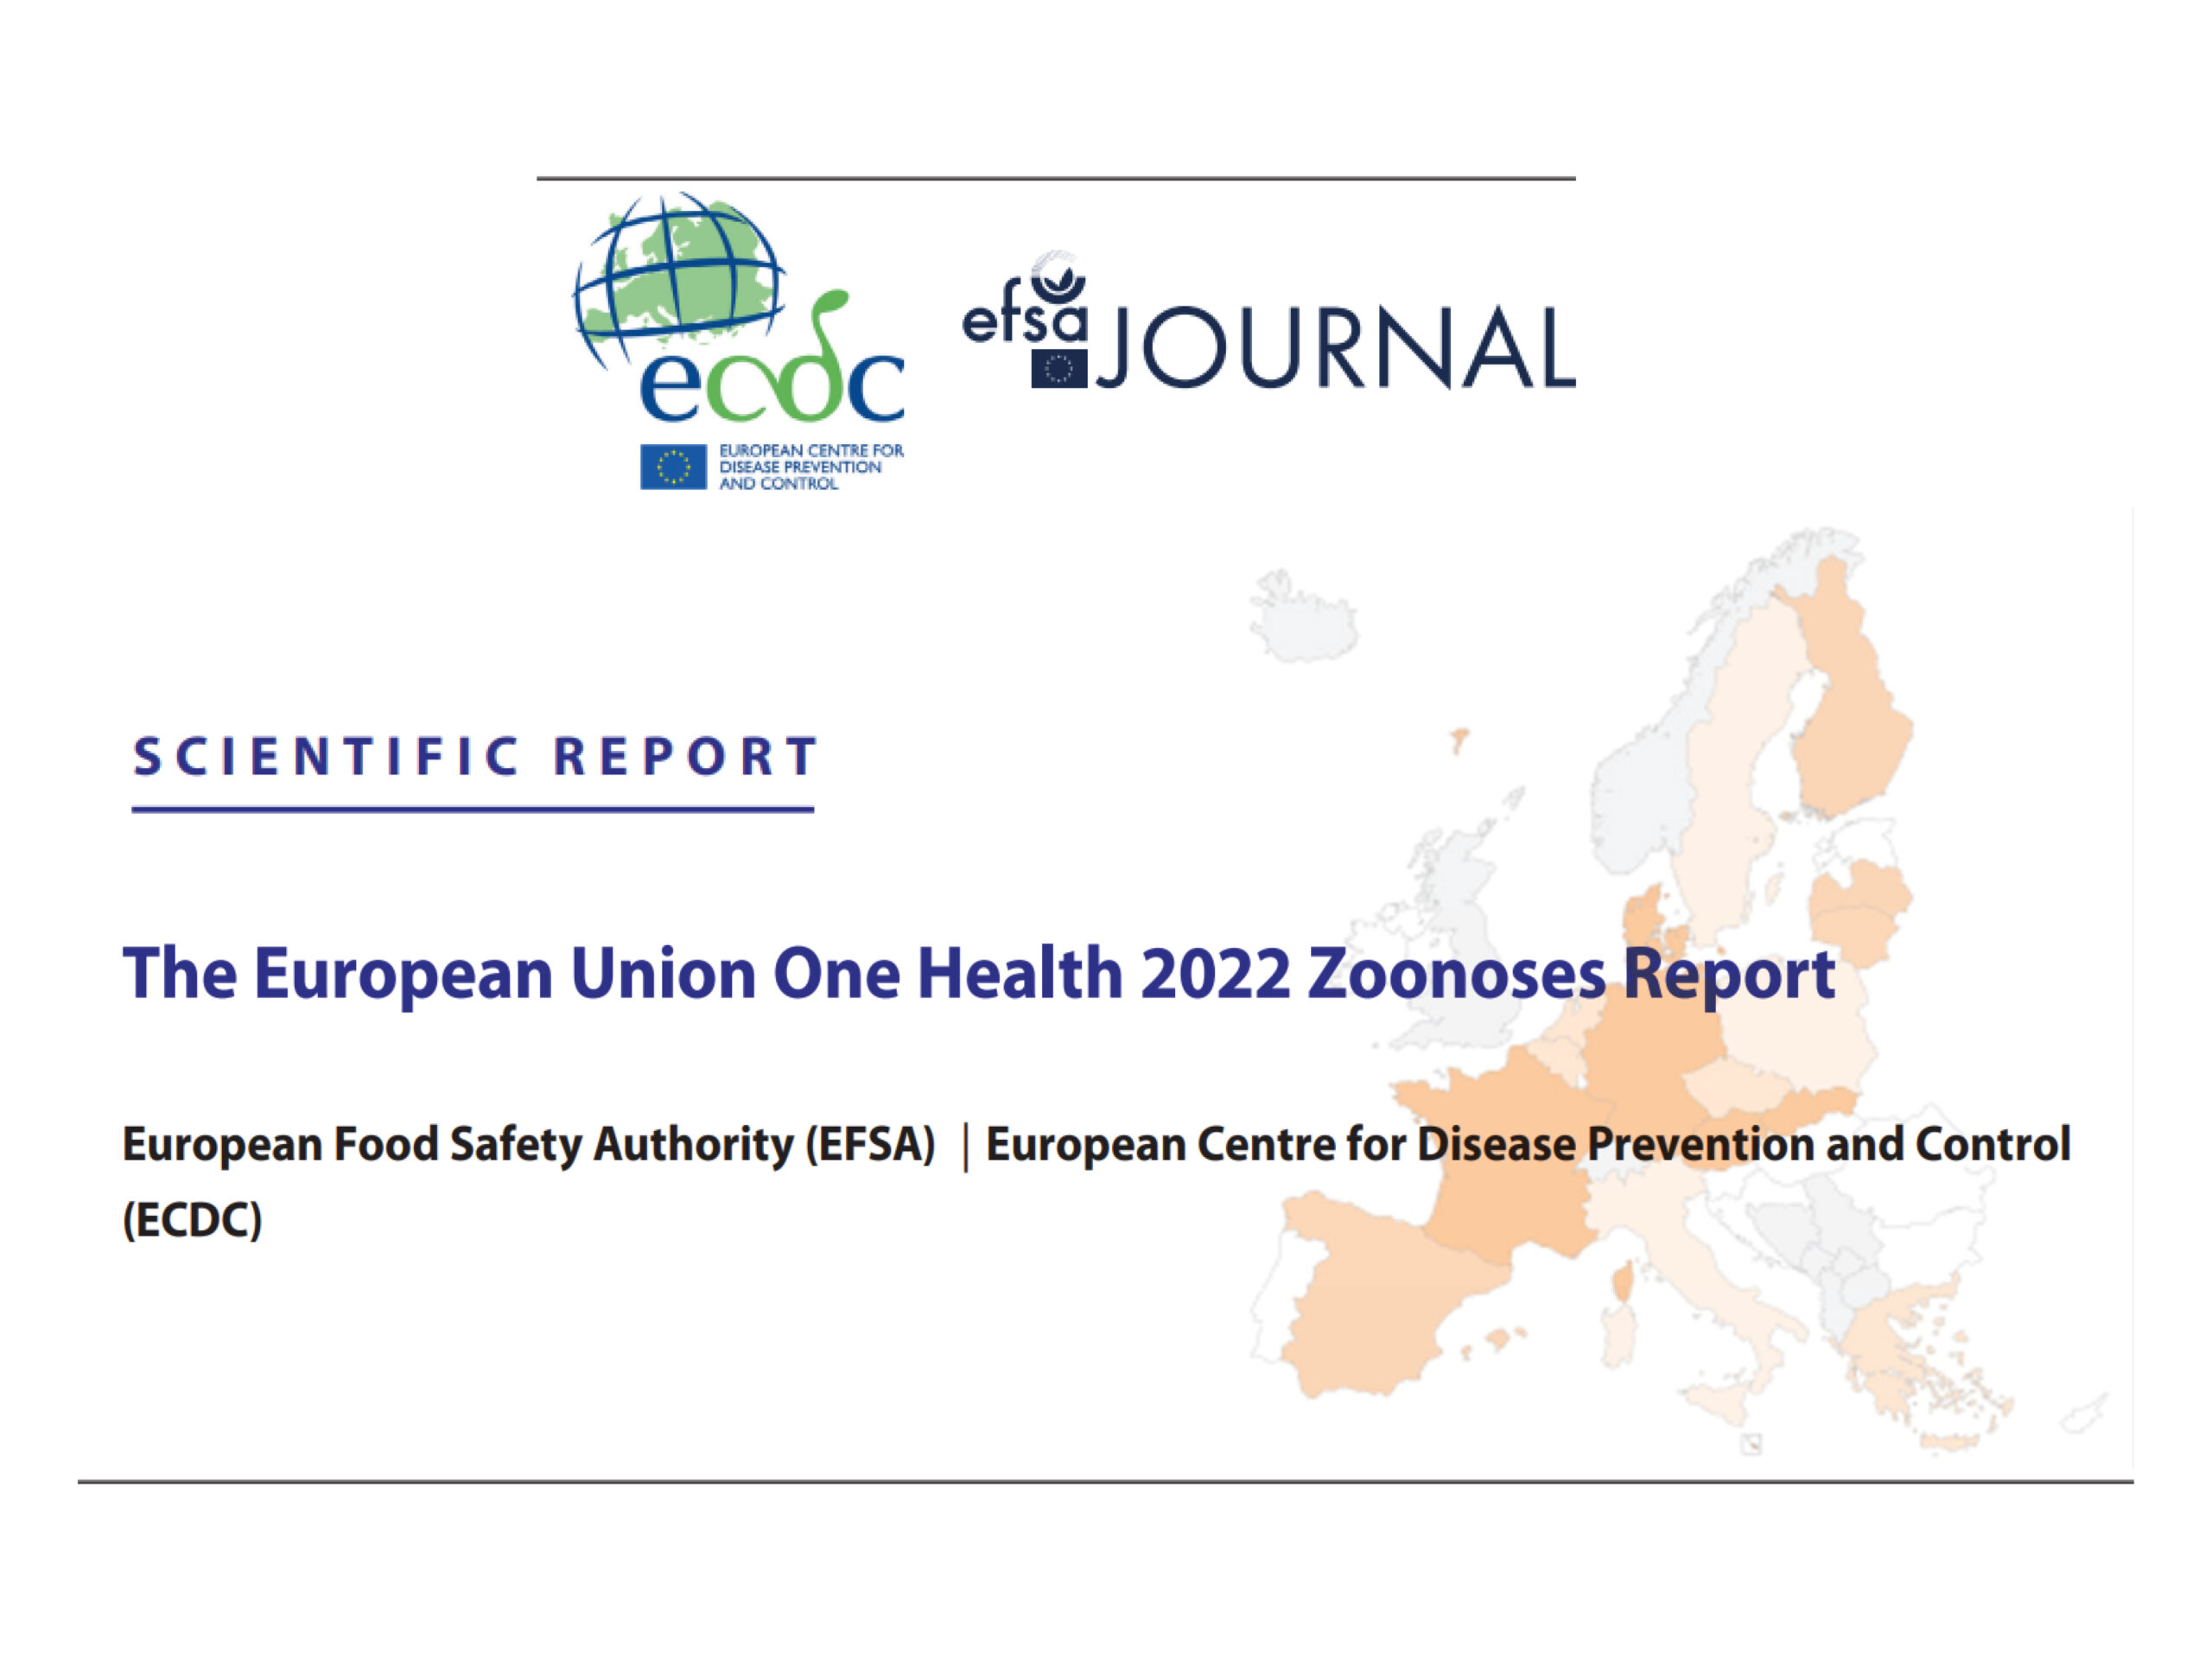 Il Rapporto One Health 2022 sulle zoonosi dell’Unione europea